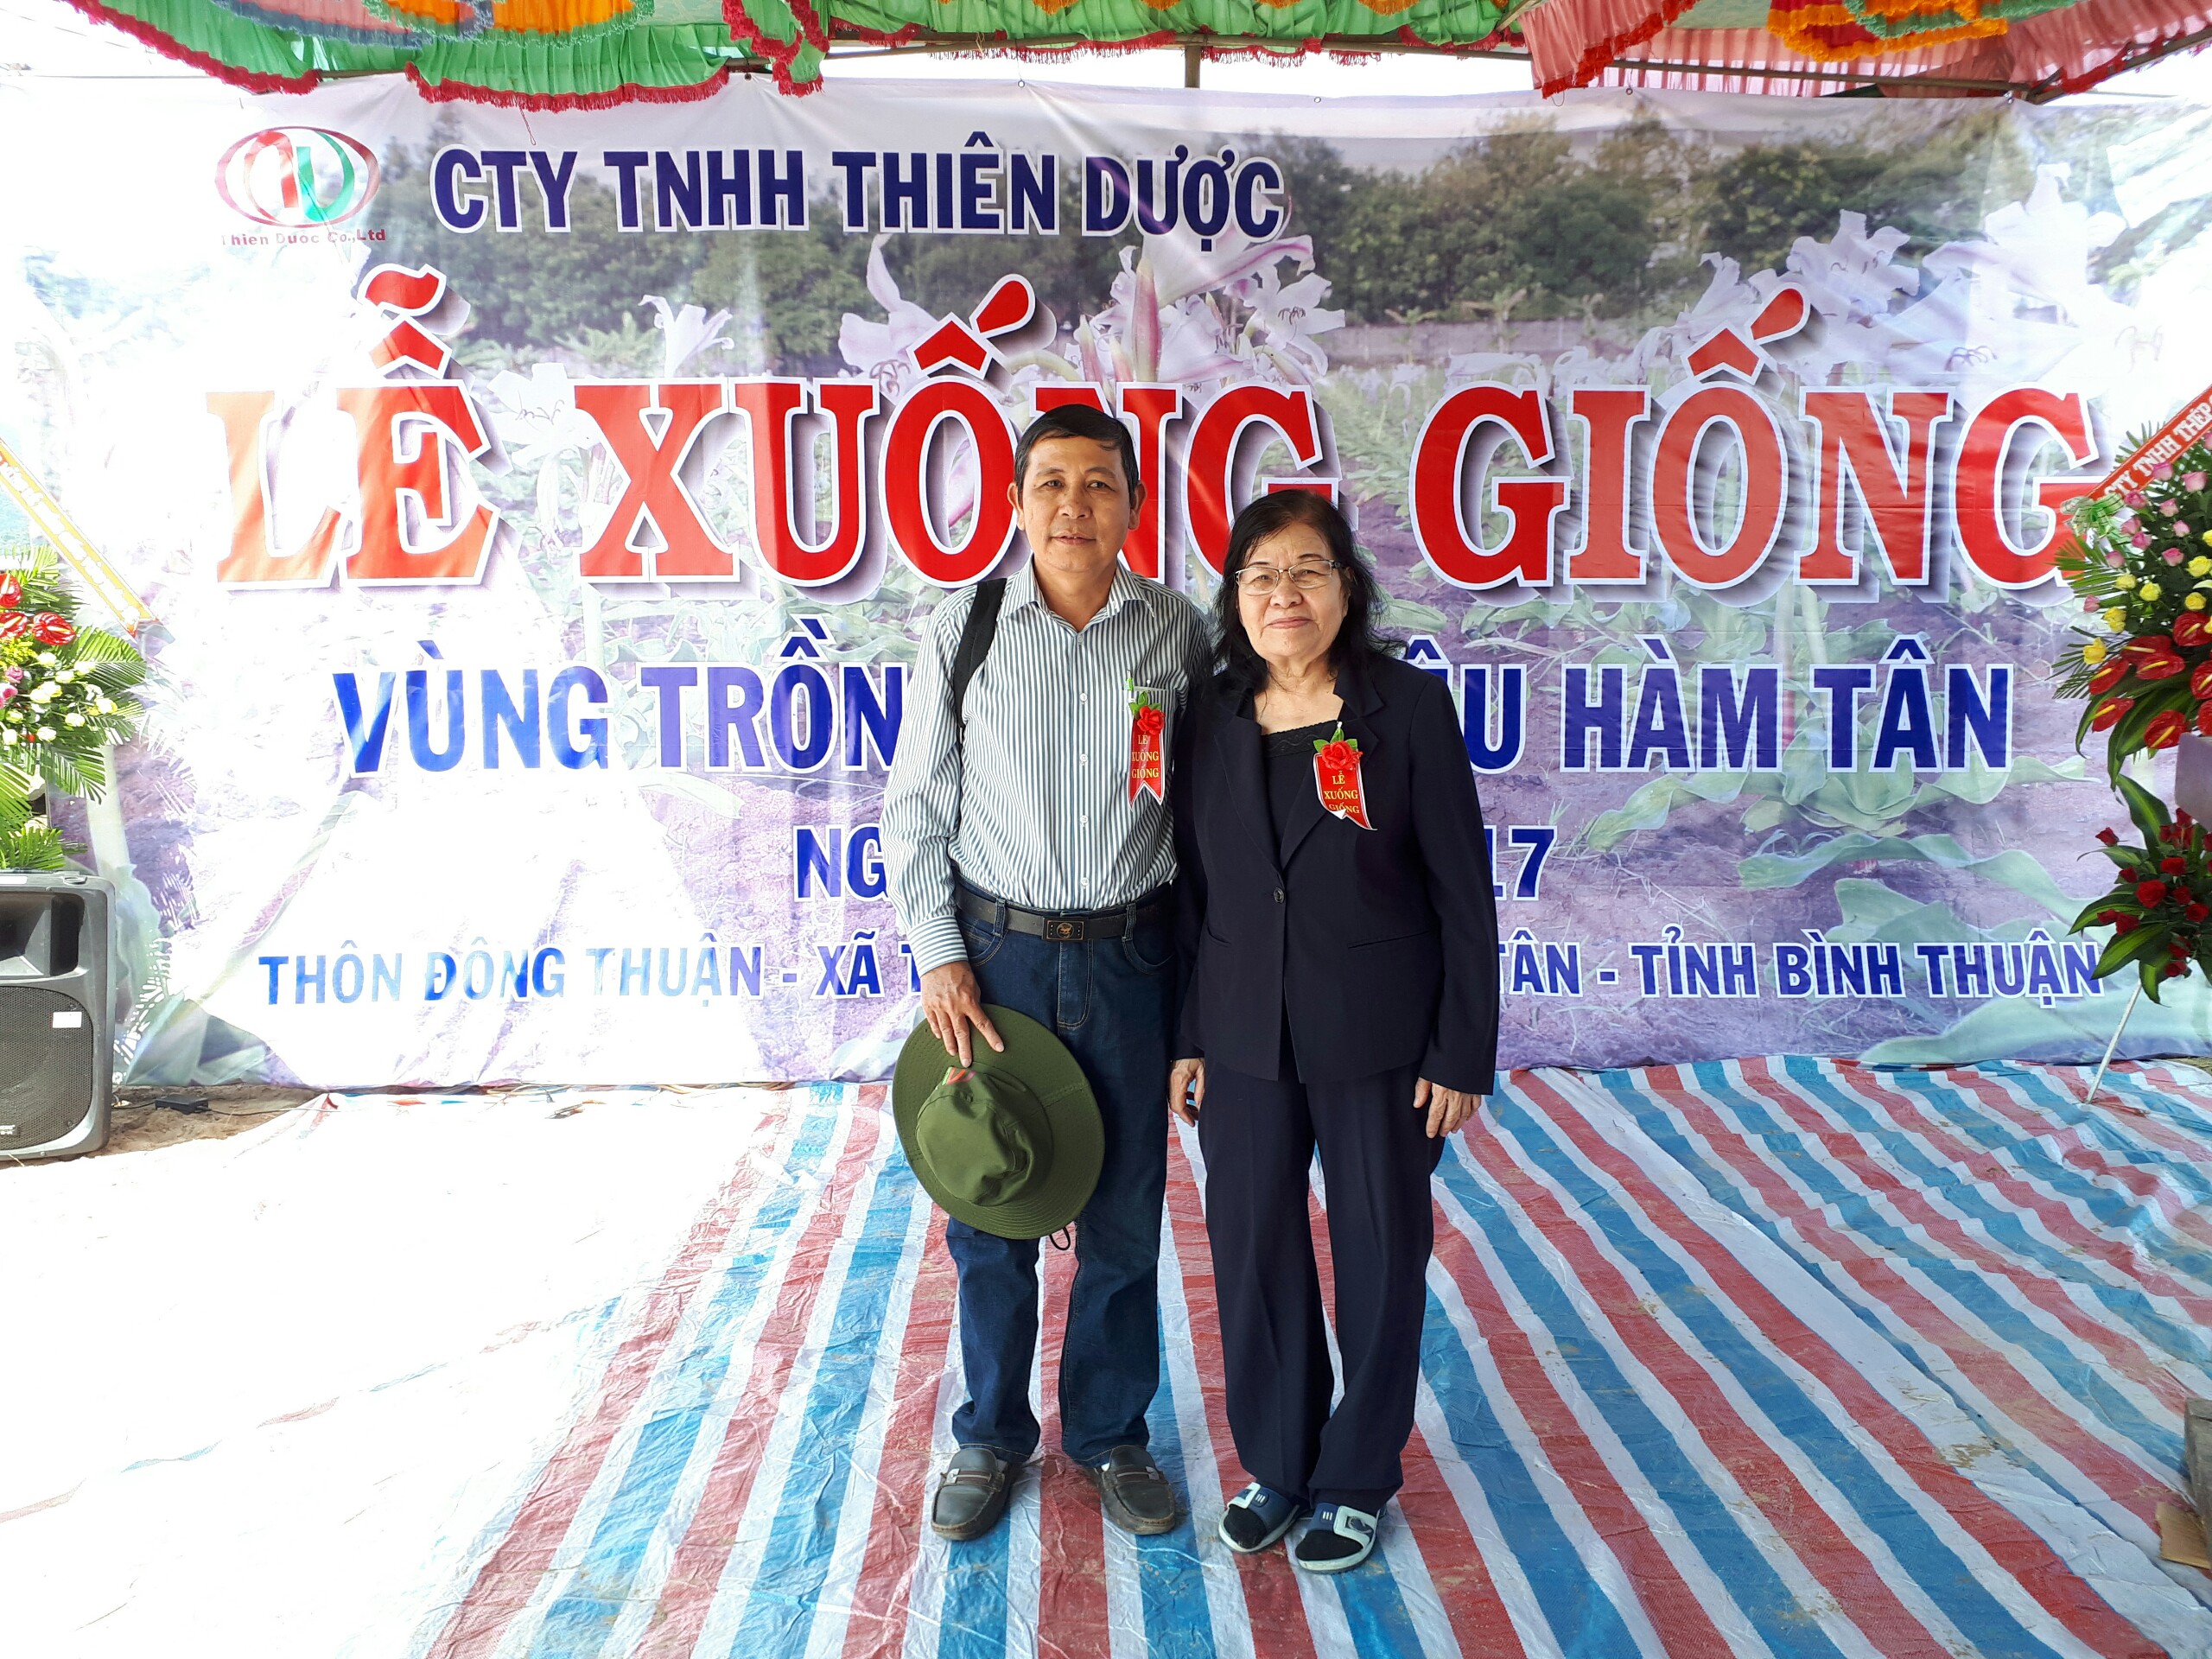 Lễ xuống giống Vùng trồng Hàm Tân - Bình Thuận